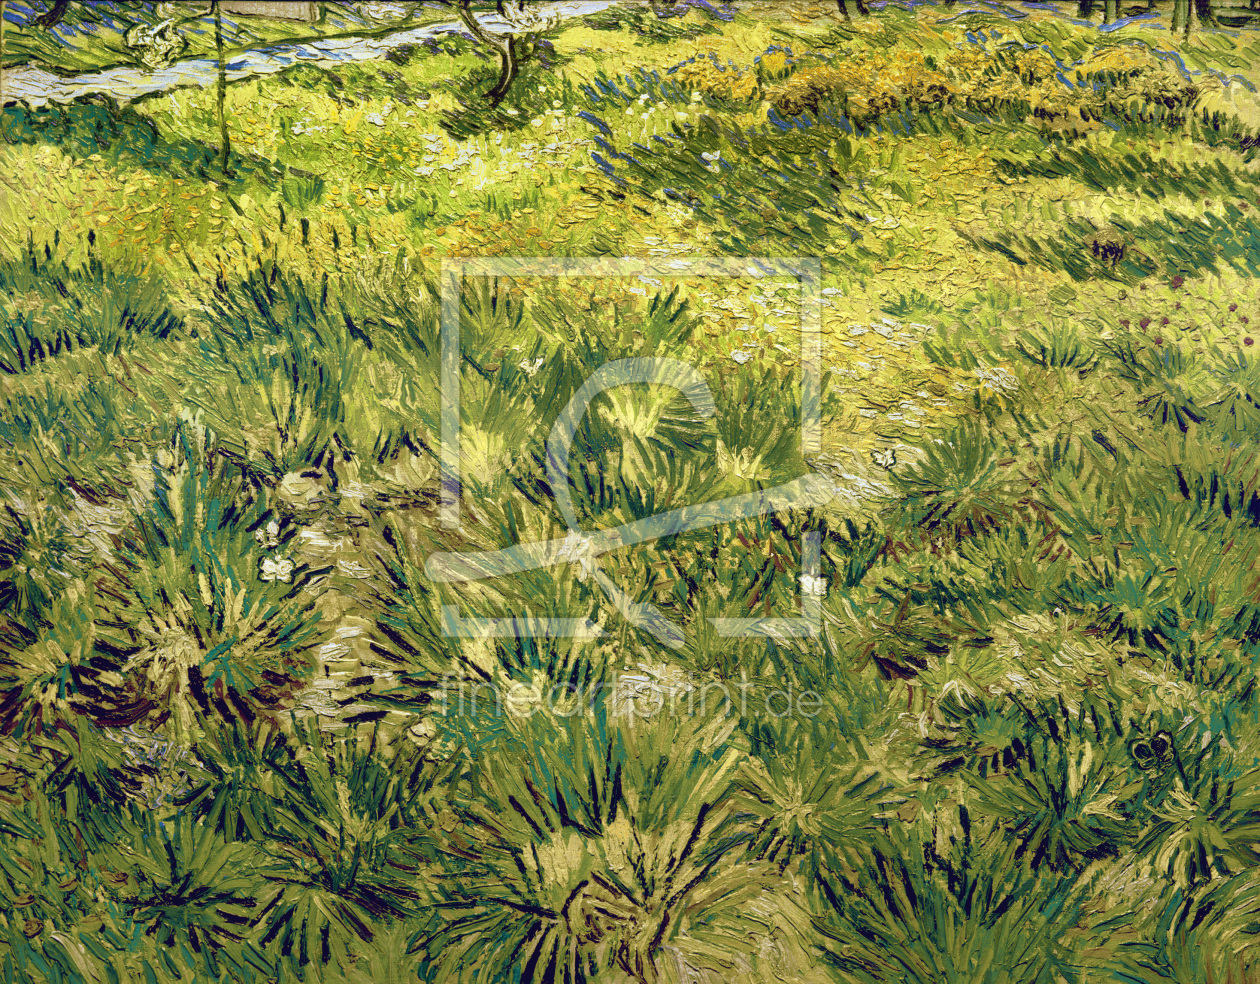 Bild-Nr.: 30003266 van Gogh / Garden at Saint-Paul / 1890 erstellt von van Gogh, Vincent